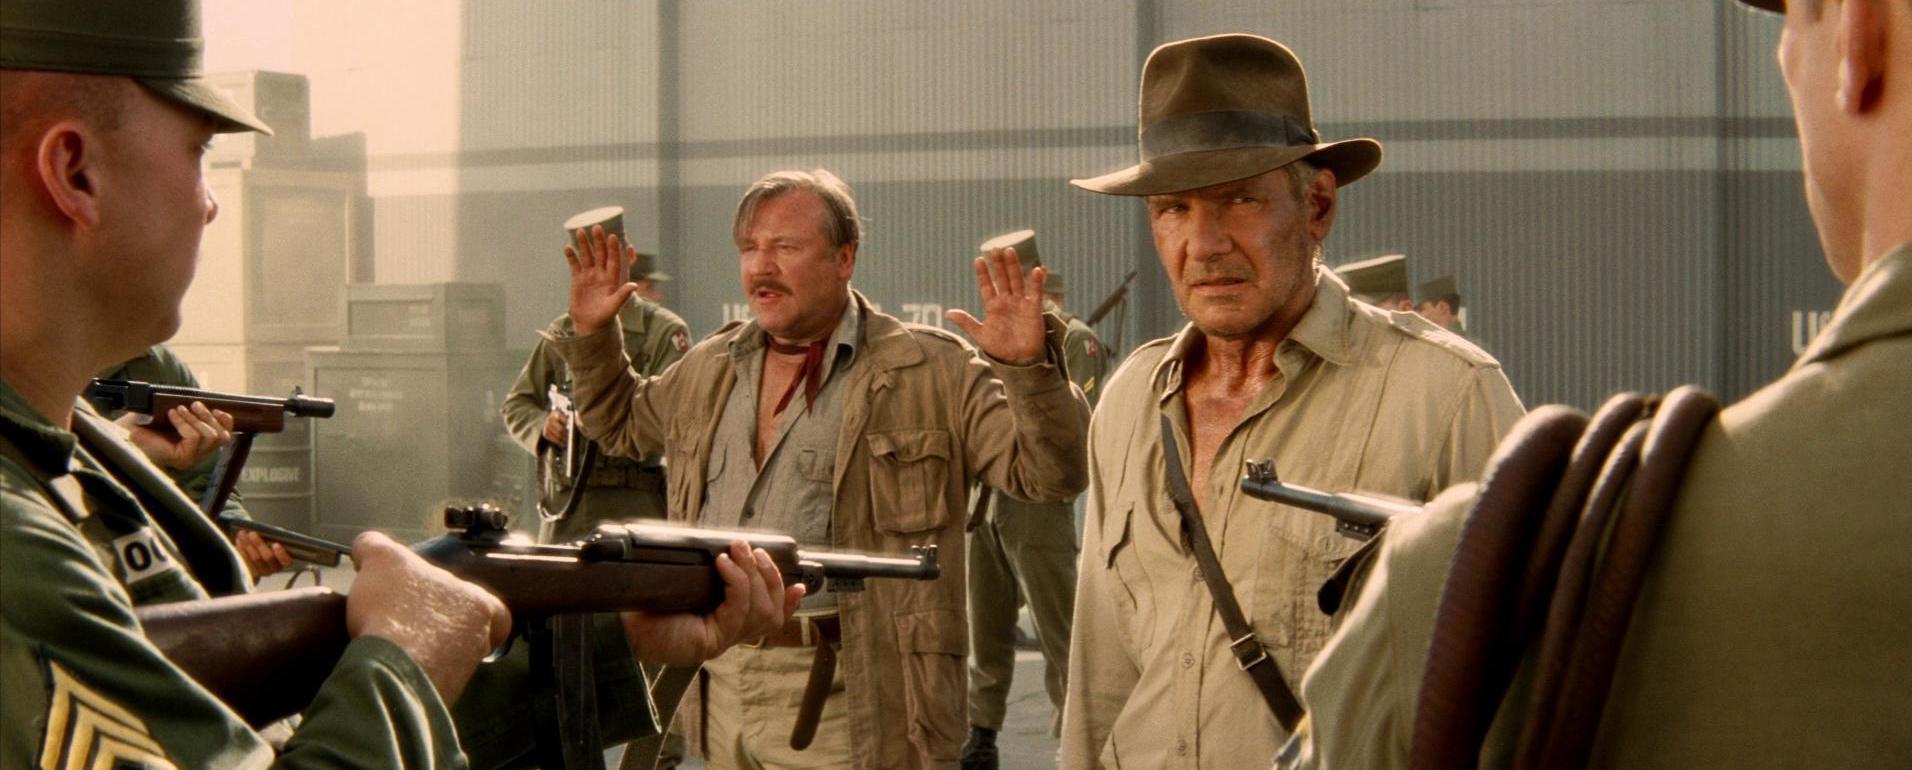 Indiana Jones': Todos os filmes da franquia estão disponíveis na HBO Max! -  CinePOP